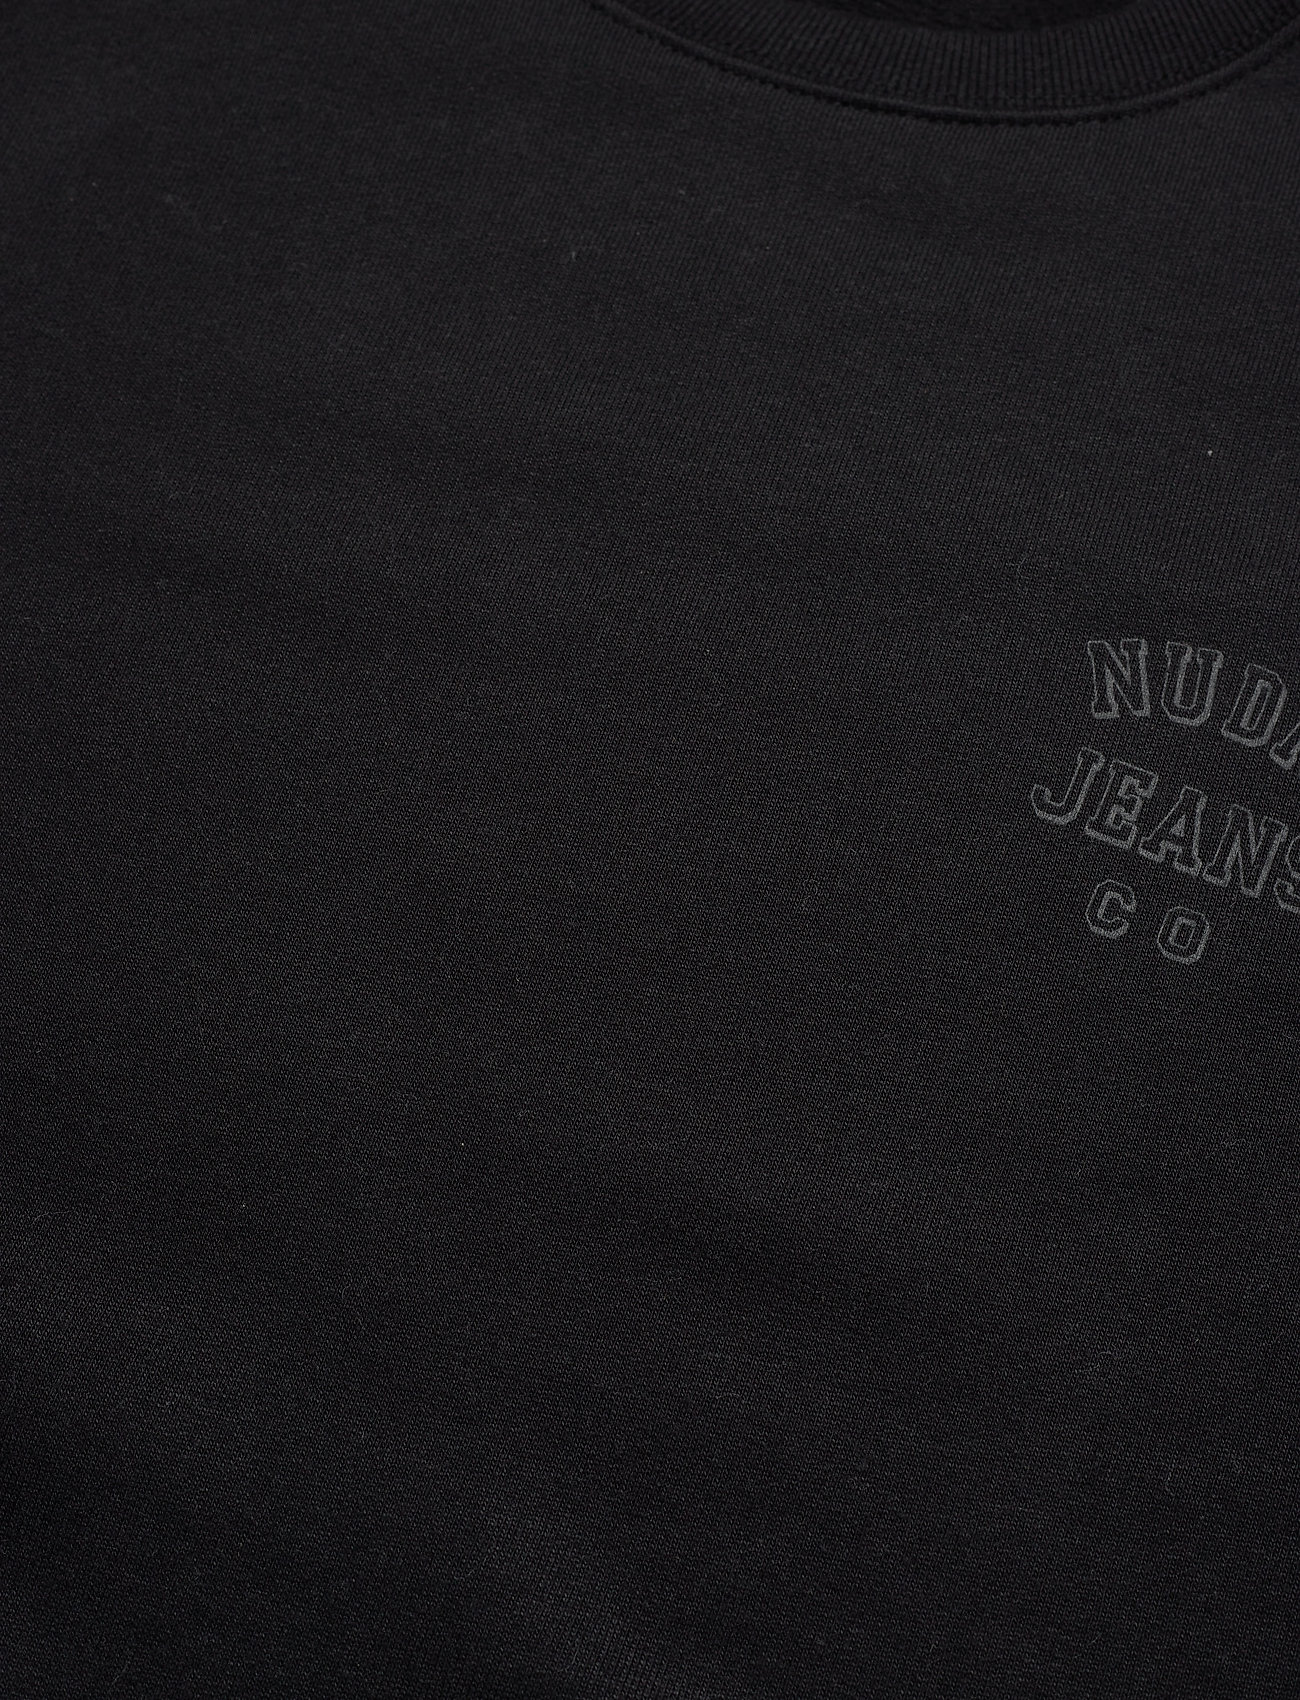 Nudie Jeans - Frasse Logo Sweatshirt Black - truien - black - 5